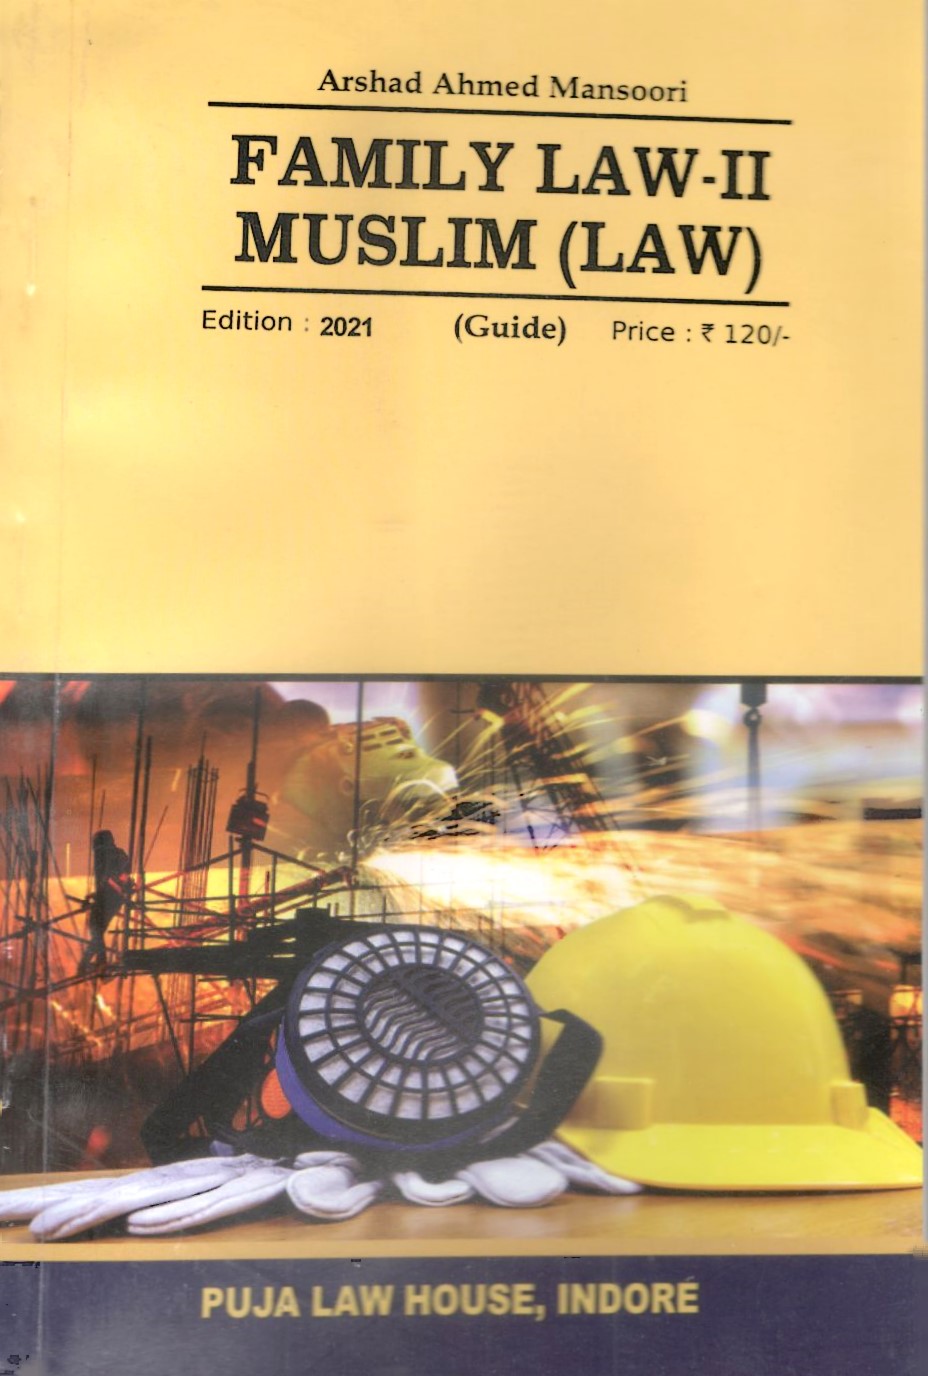 Family Law - II Muslim (LAW) (Guide)